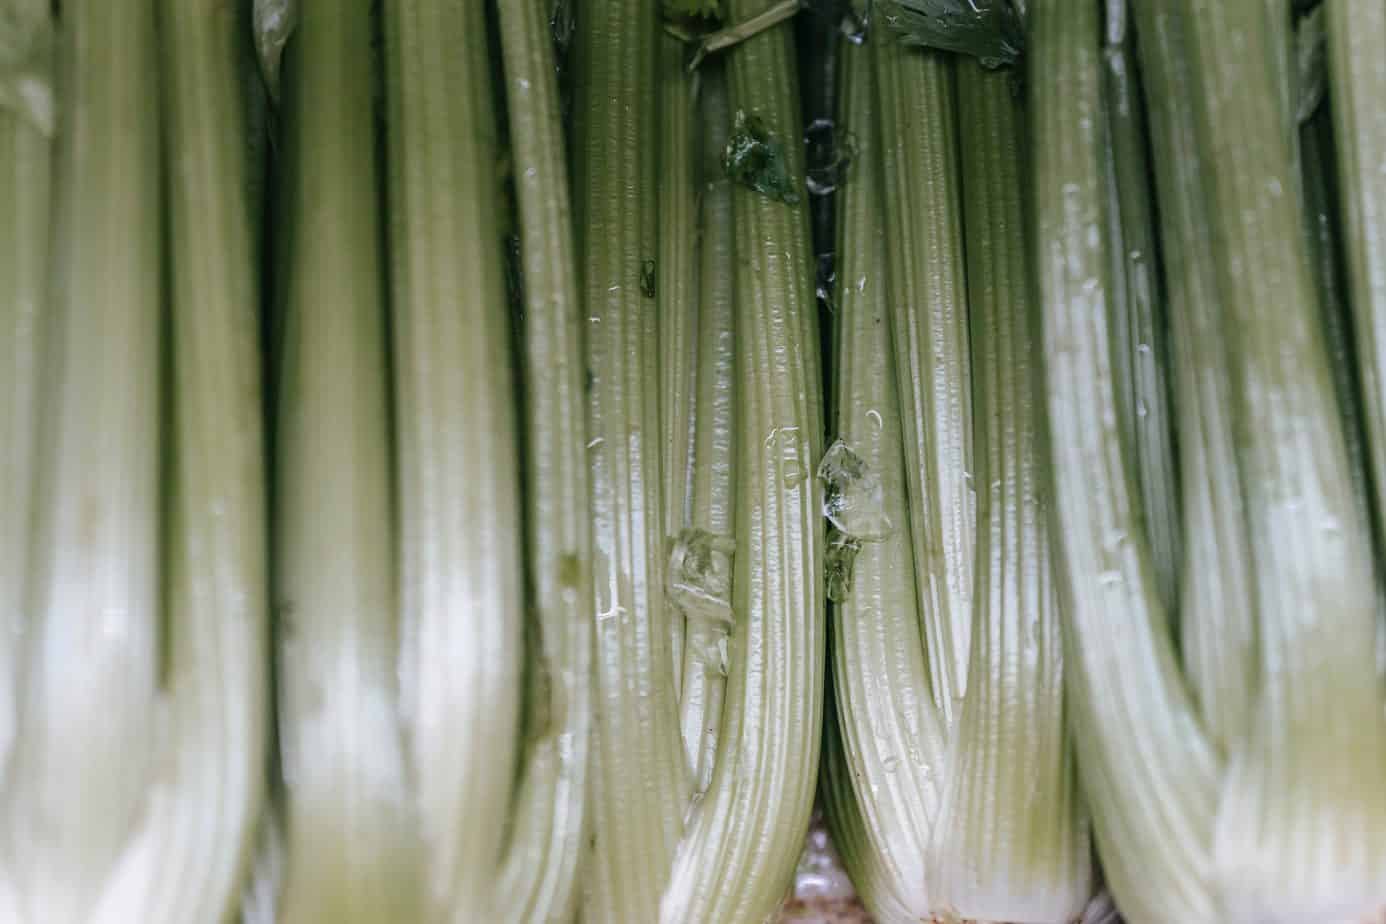 10 reasons to drink celery juice